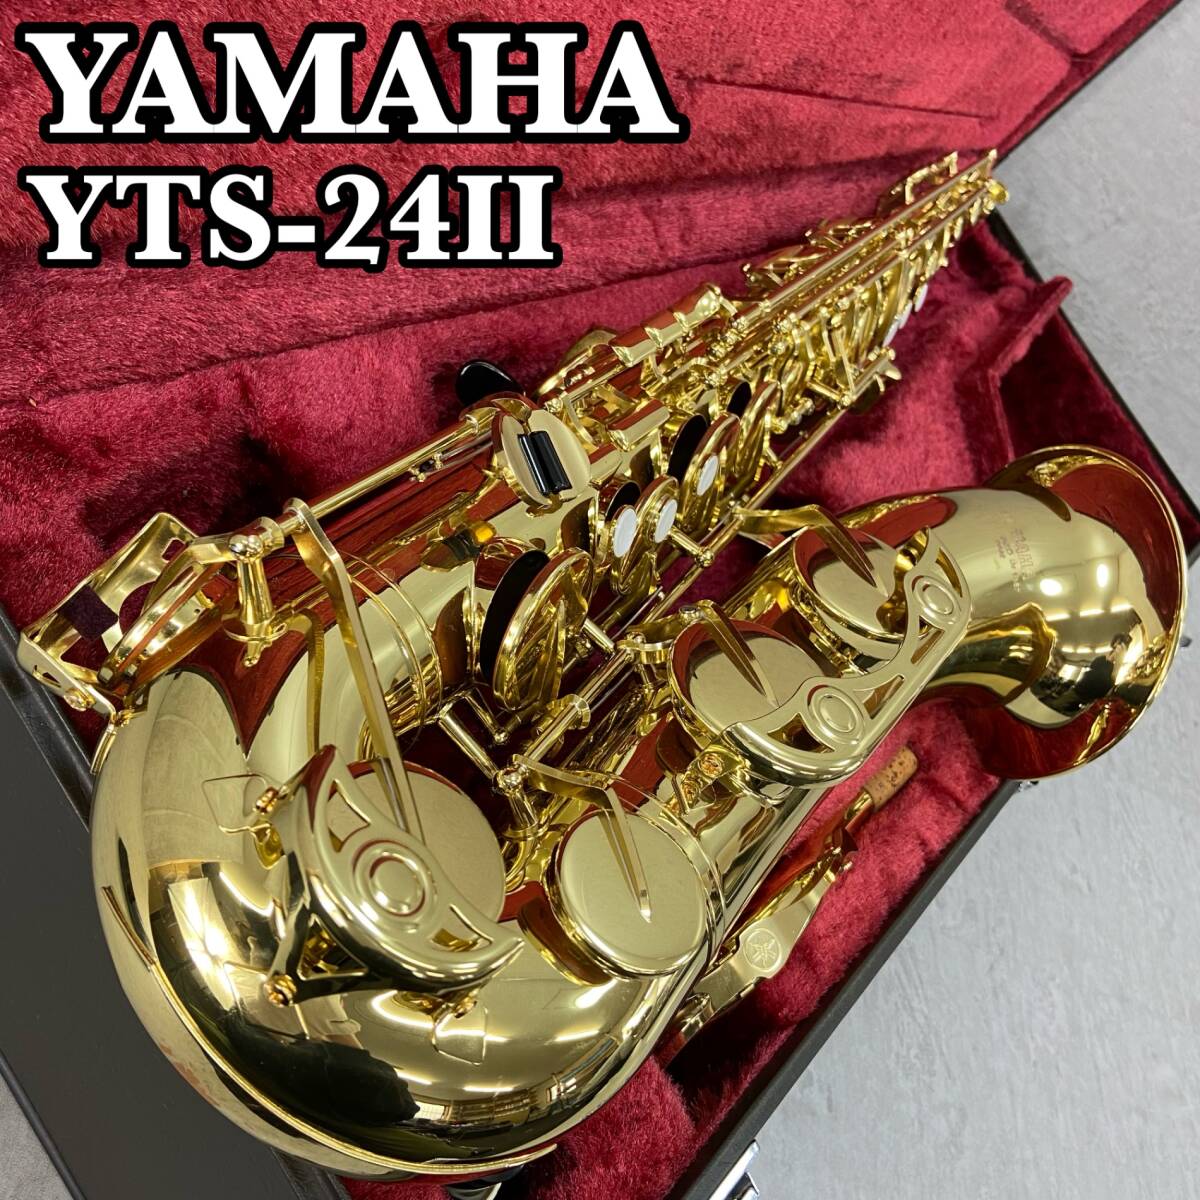 YAMAHA Yamaha тенор саксофон Tenor SAXPHONE духовые инструменты YTS-24Ⅱ Gold Rucker schu-tento модель студент начинающий введение для 